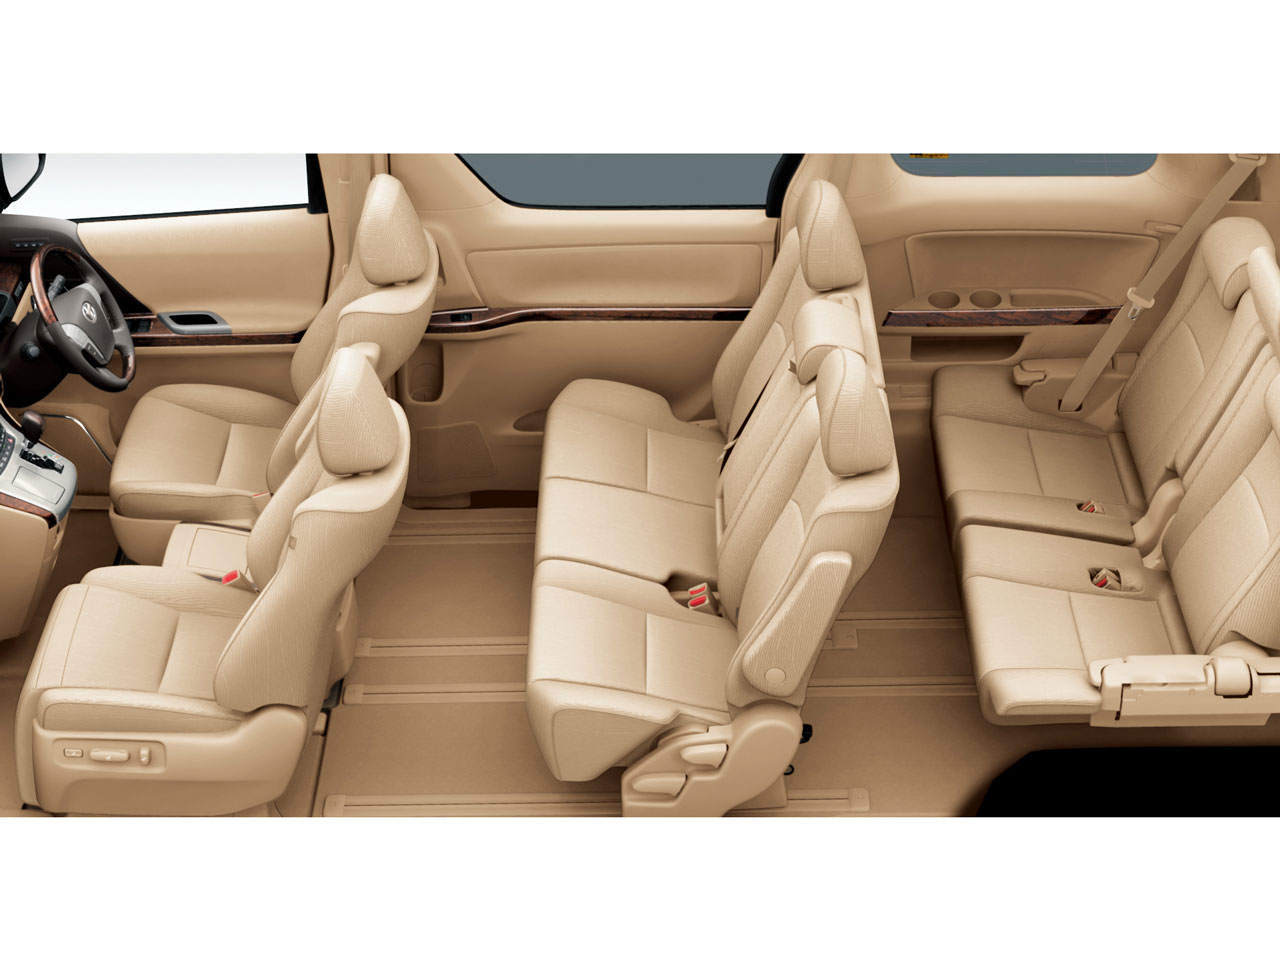 トヨタ ヴェルファイア 08年モデル 2 4z プラチナセレクション 2の価格 性能 装備 オプション 10年4月1日発売 価格 Com